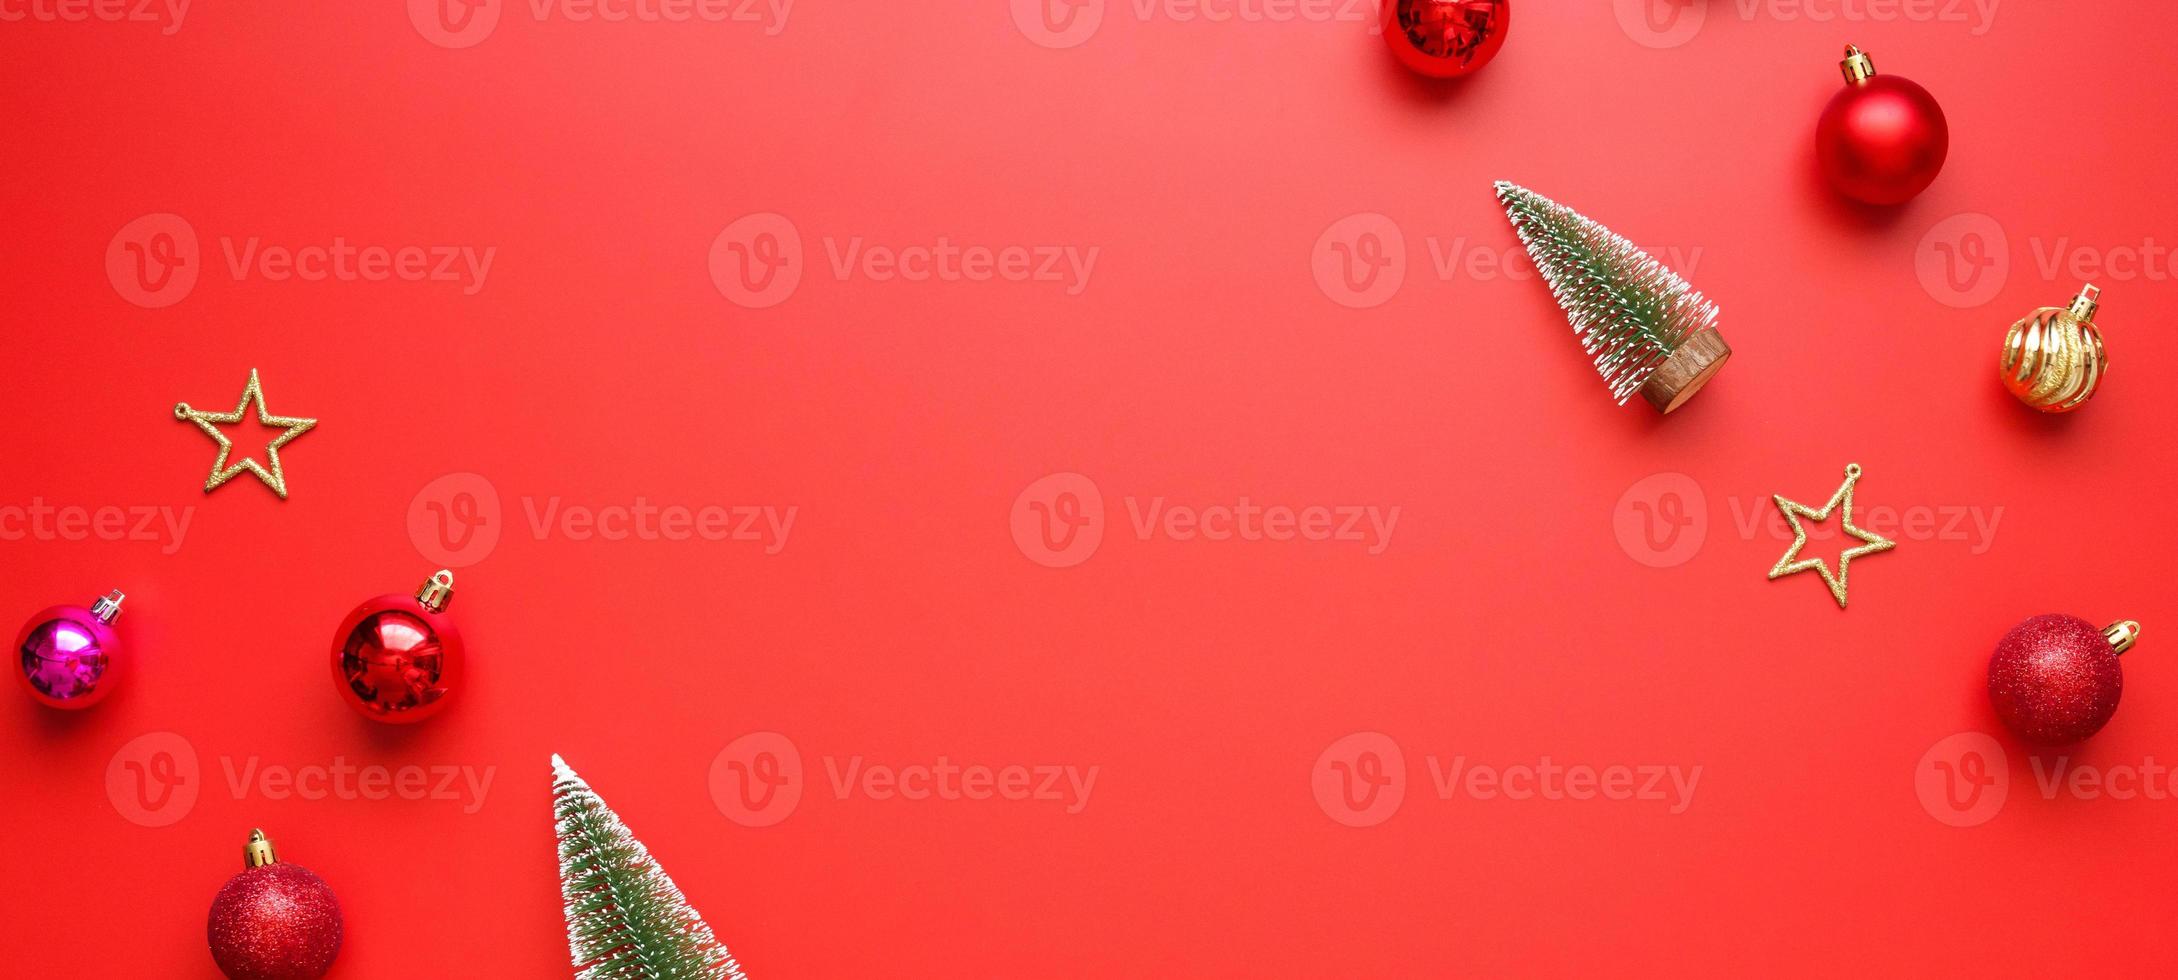 jul ny år Semester bakgrund tall träd boll struntsak på röd bakgrund foto